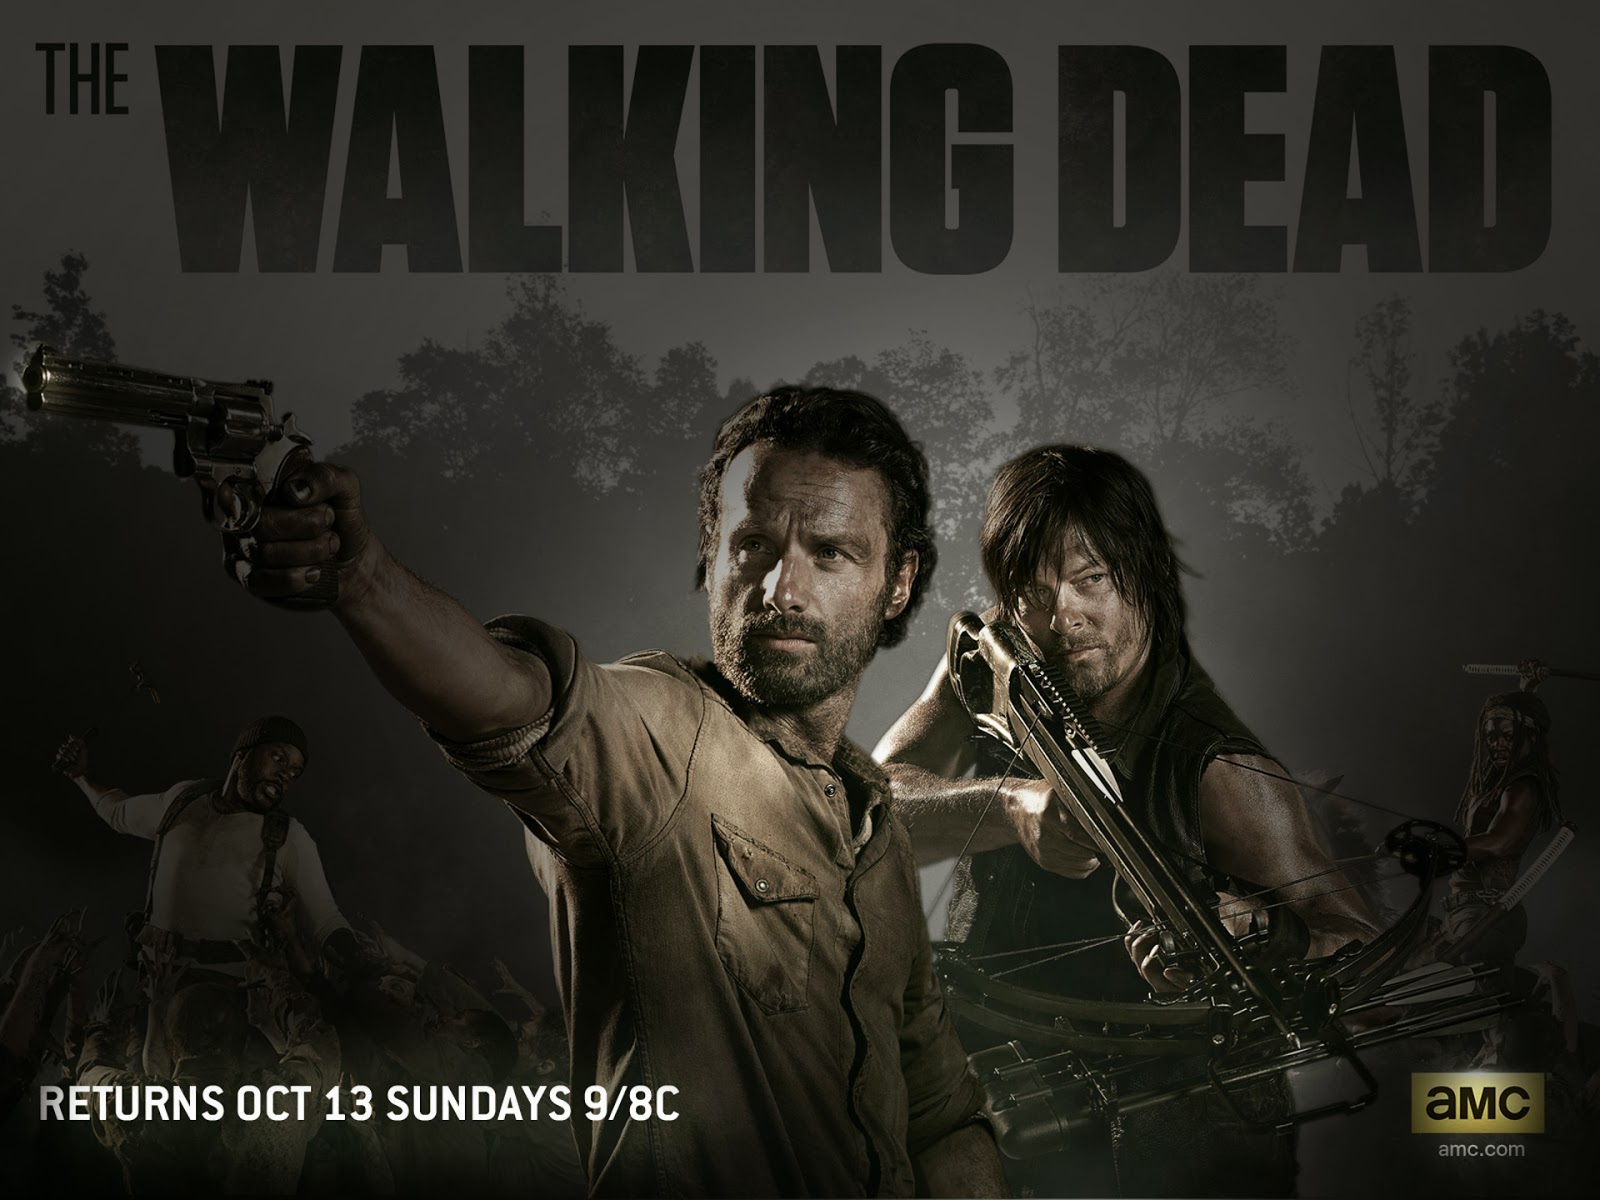 The Walking Dead Wallpaper Season 3 The walking dead season 4